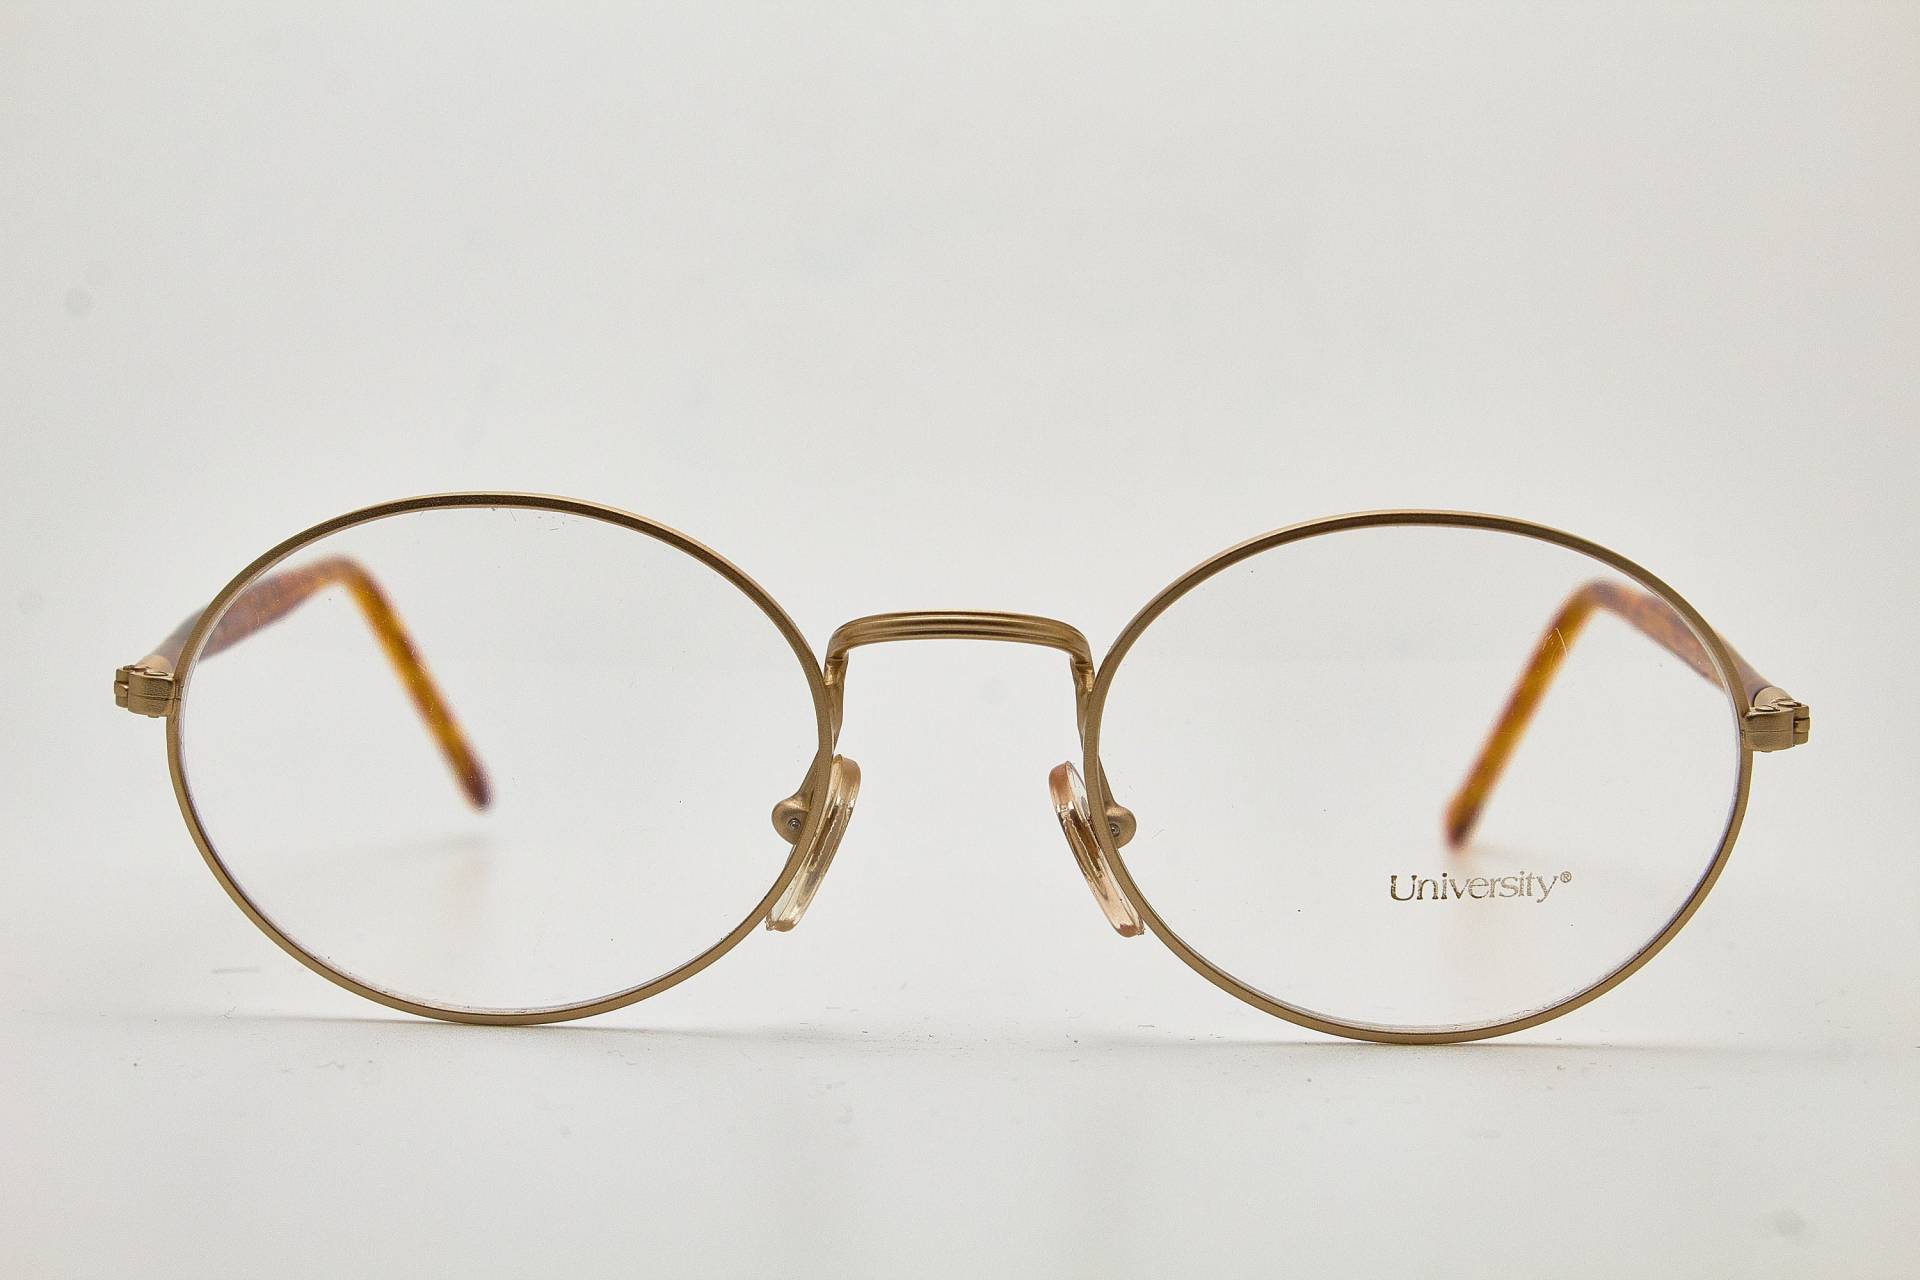 Filos 6284 University Braun Gold Runder Rahmen/Vintage Brillen/Runde Brillen Vintage/90Er Jahre Brille/ von VintageGlassesVault